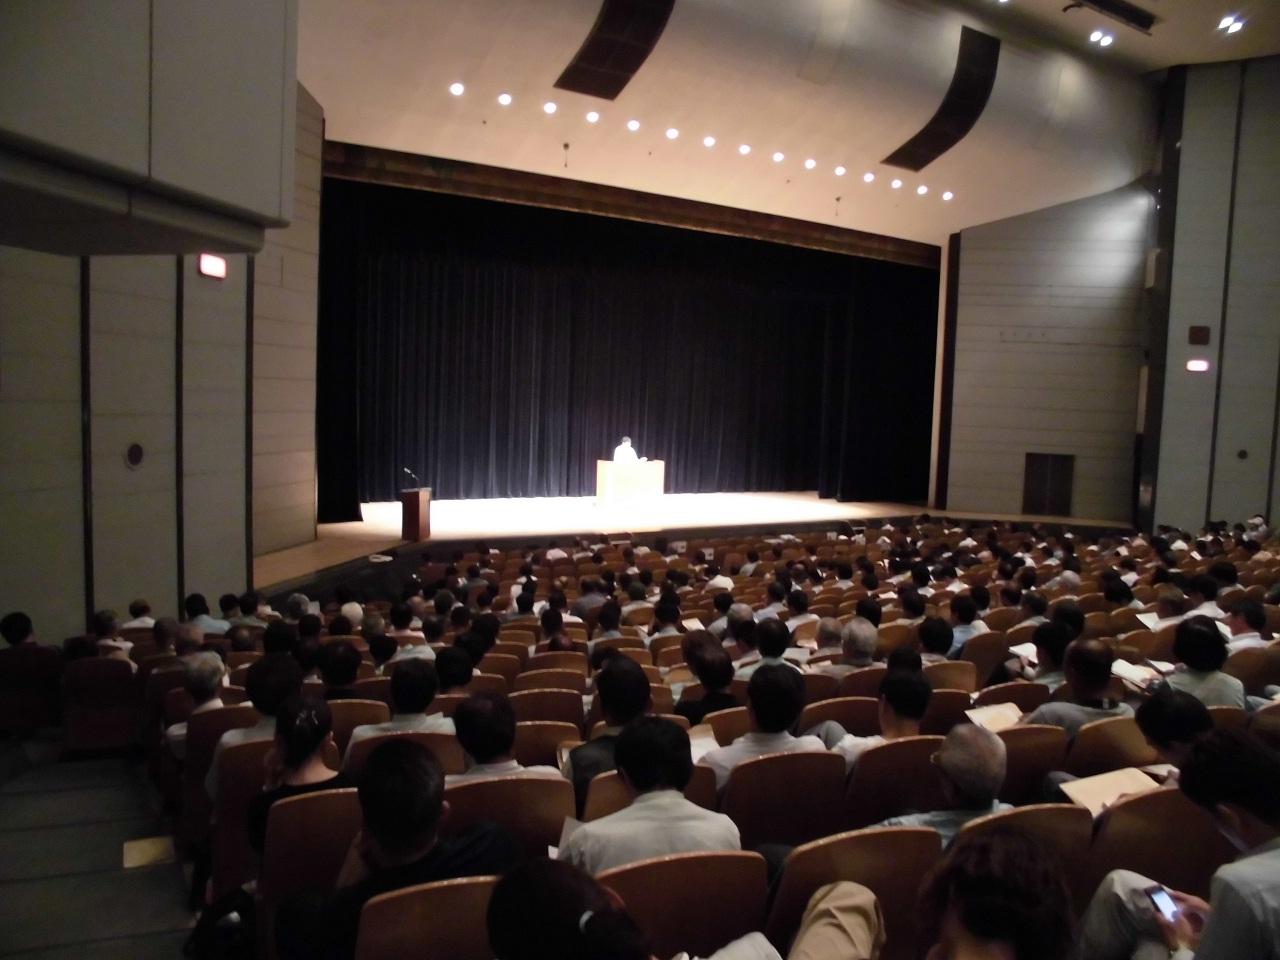 男性の講師がステージ上に立って講習を行っている様子を、受講者席側から撮影した写真